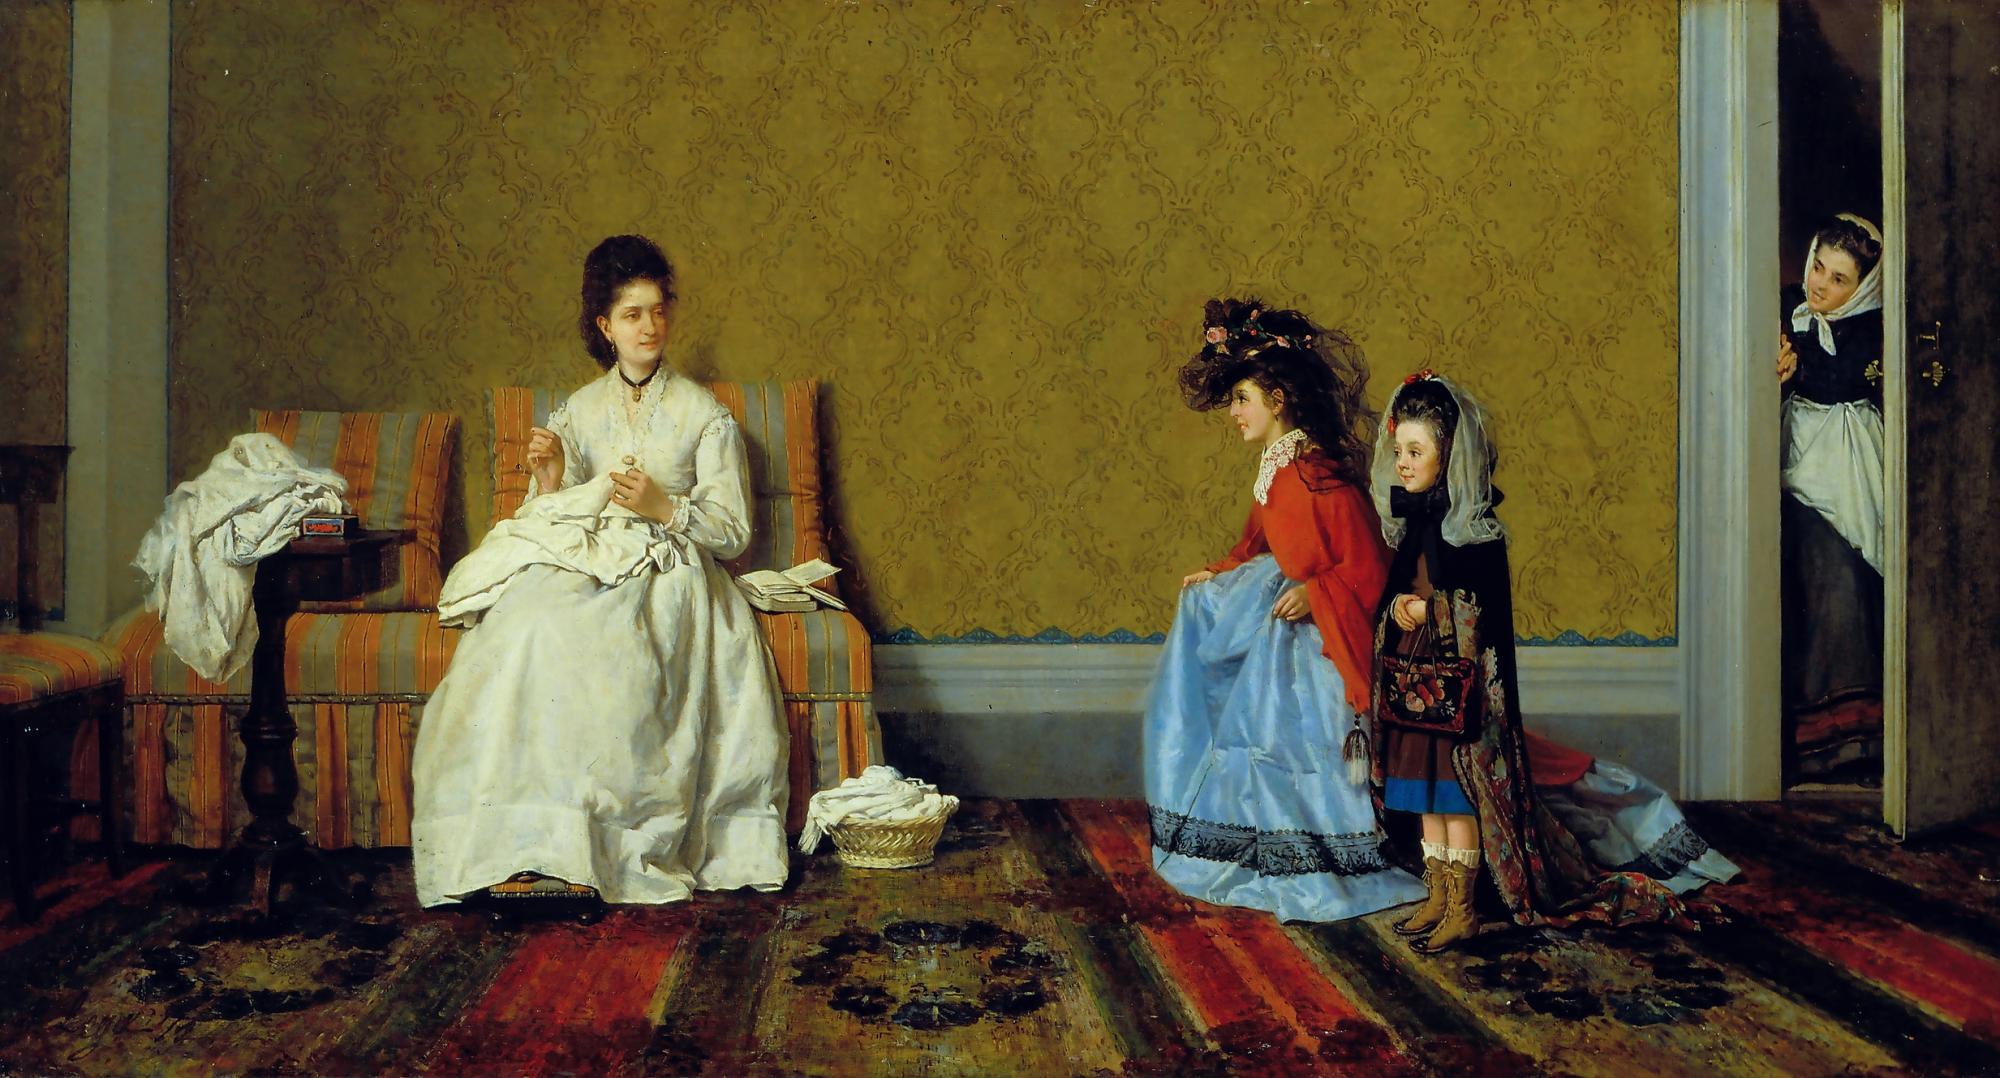 Silvestro Lega    
Playing Dress-Up    
1872        
Oil on canvas     
Viareggio, Istituto Matteucci
Istituto Matteucci, Viareggio
